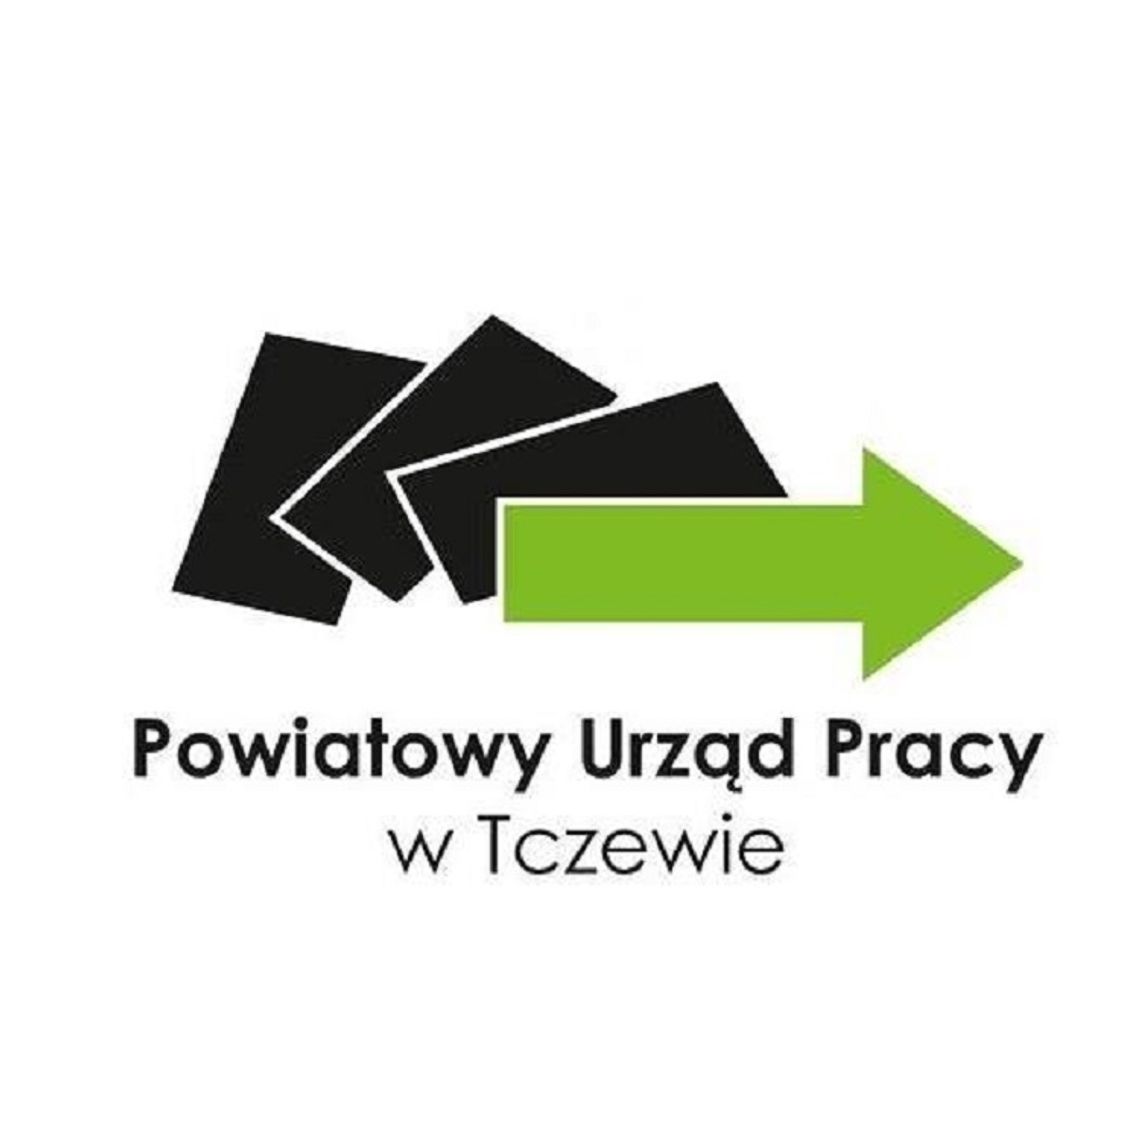 Powiatowy Urząd Pracy w Tczewie stawia na media społecznościowe. Oferty pracy i informacje o lokalnych firmach dotrą do większej liczby odbiorców